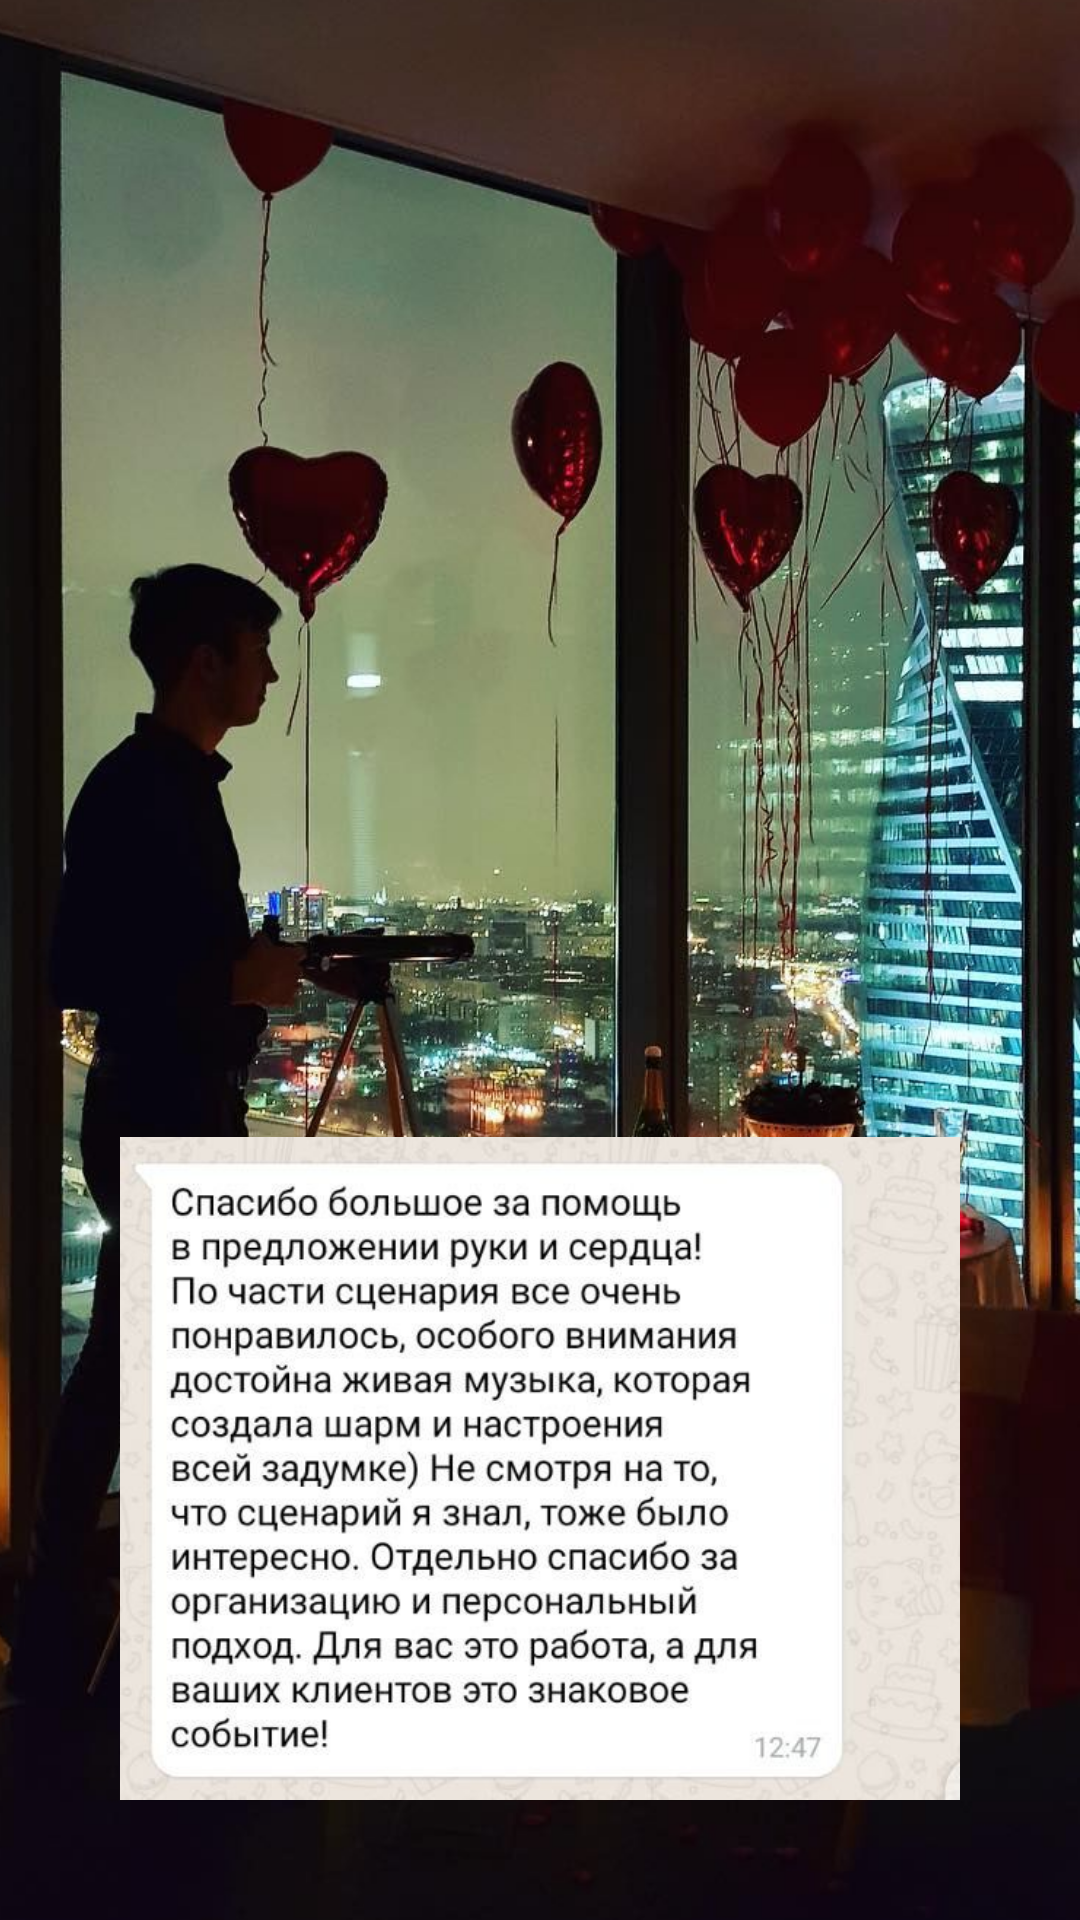 Организация предложения руки и сердца в Ростове
от компании Pandaevent